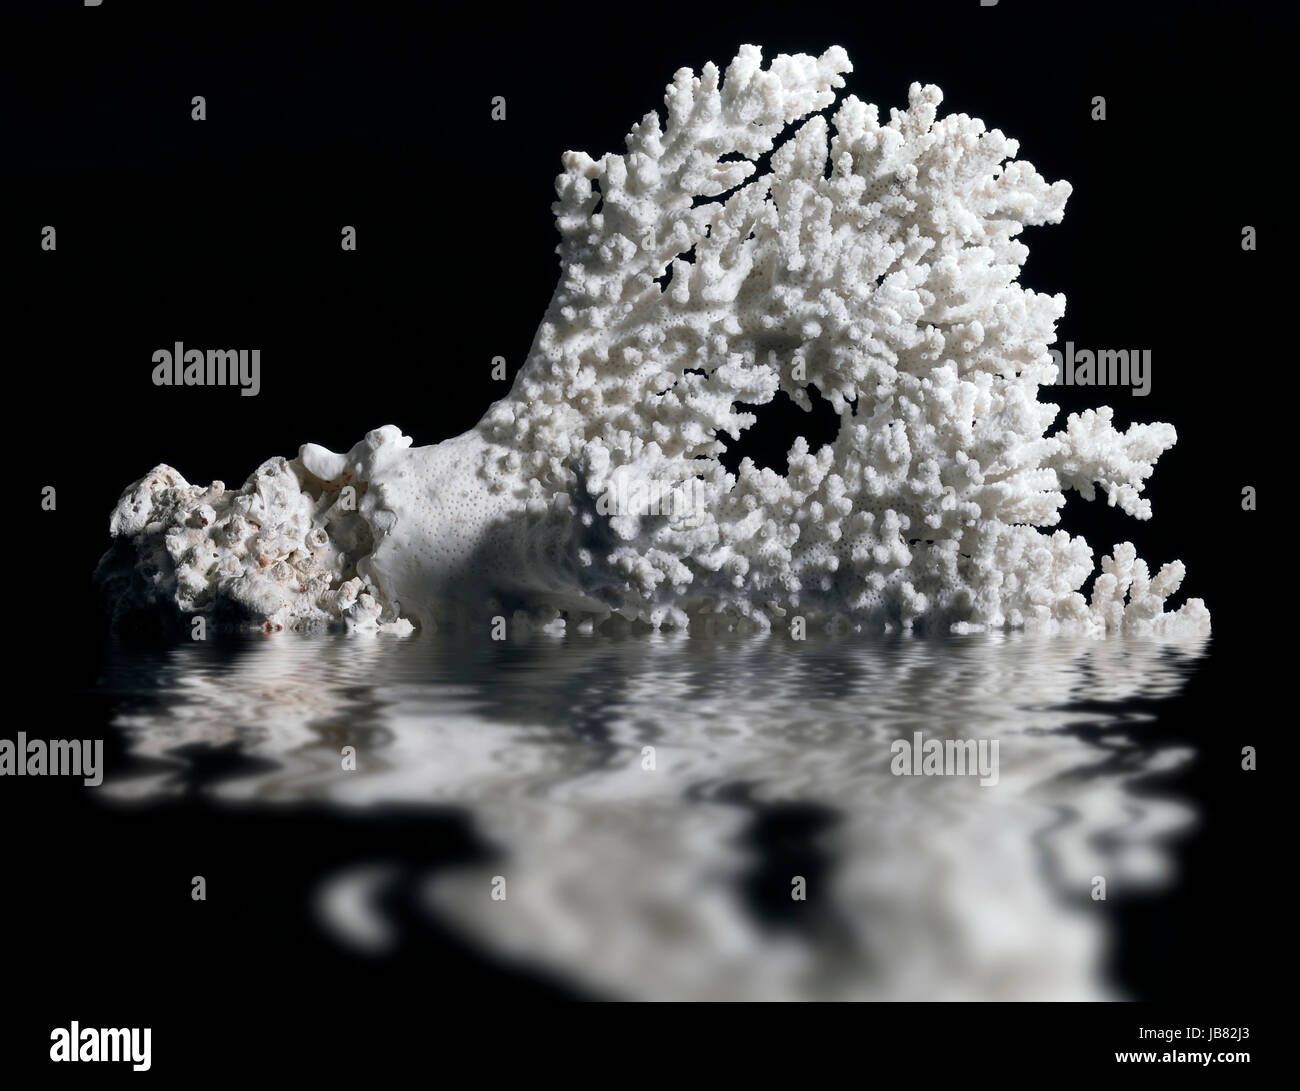 Corallo bianco sul mirroring di superficie di acqua nella parte posteriore in nero Foto Stock